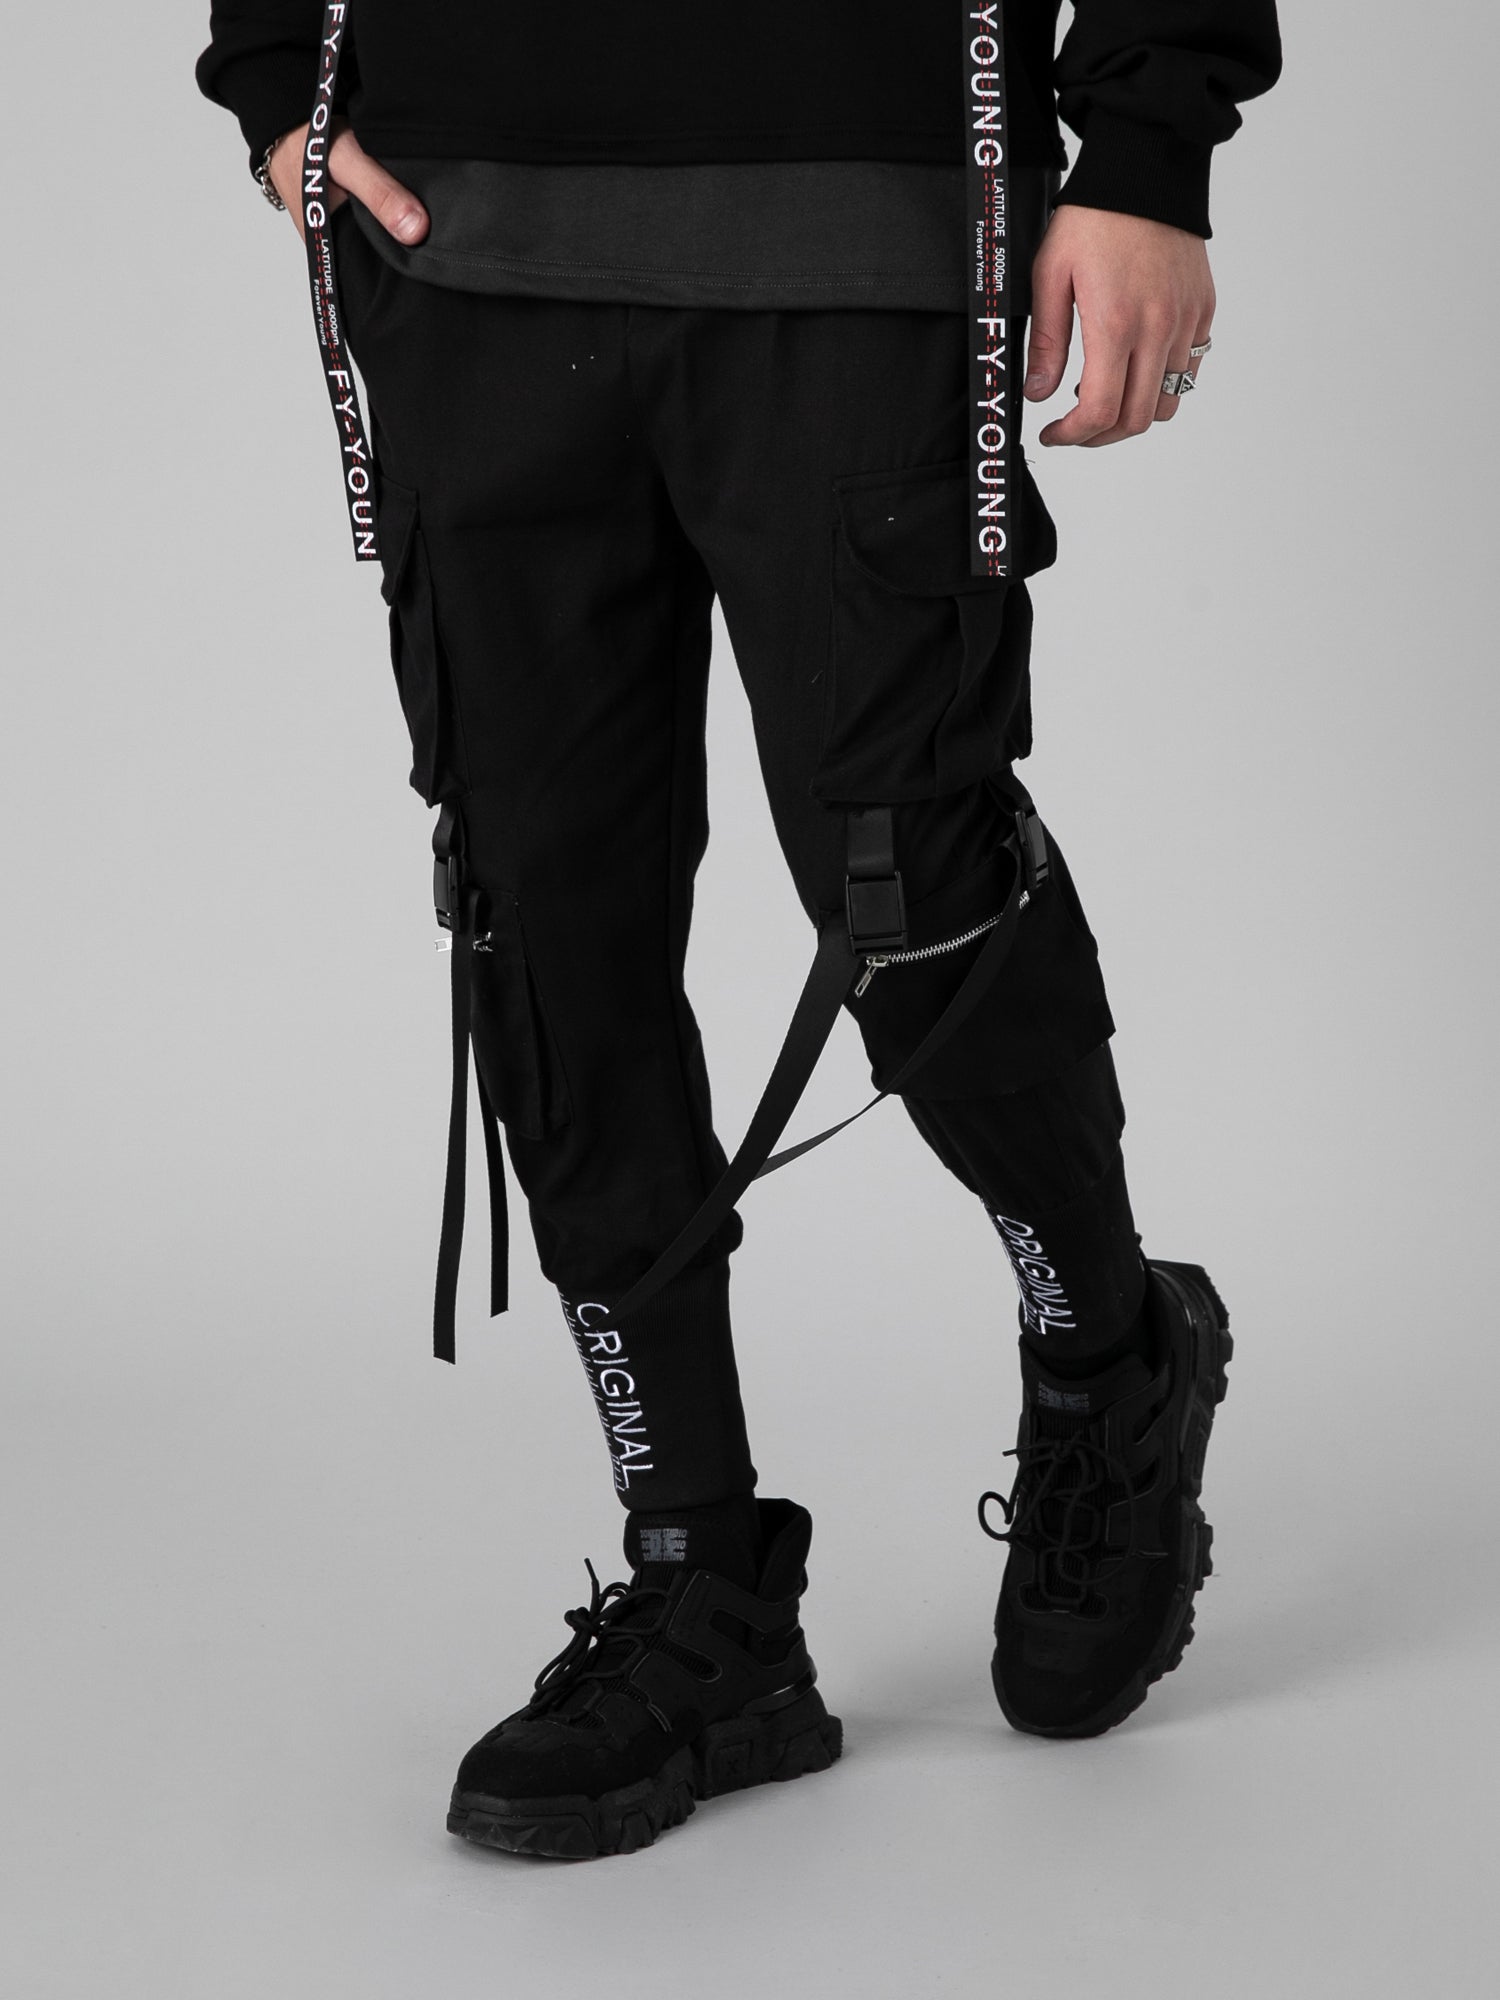 JUSTNOTAG Pantalon de jogging noir à bretelles serrées